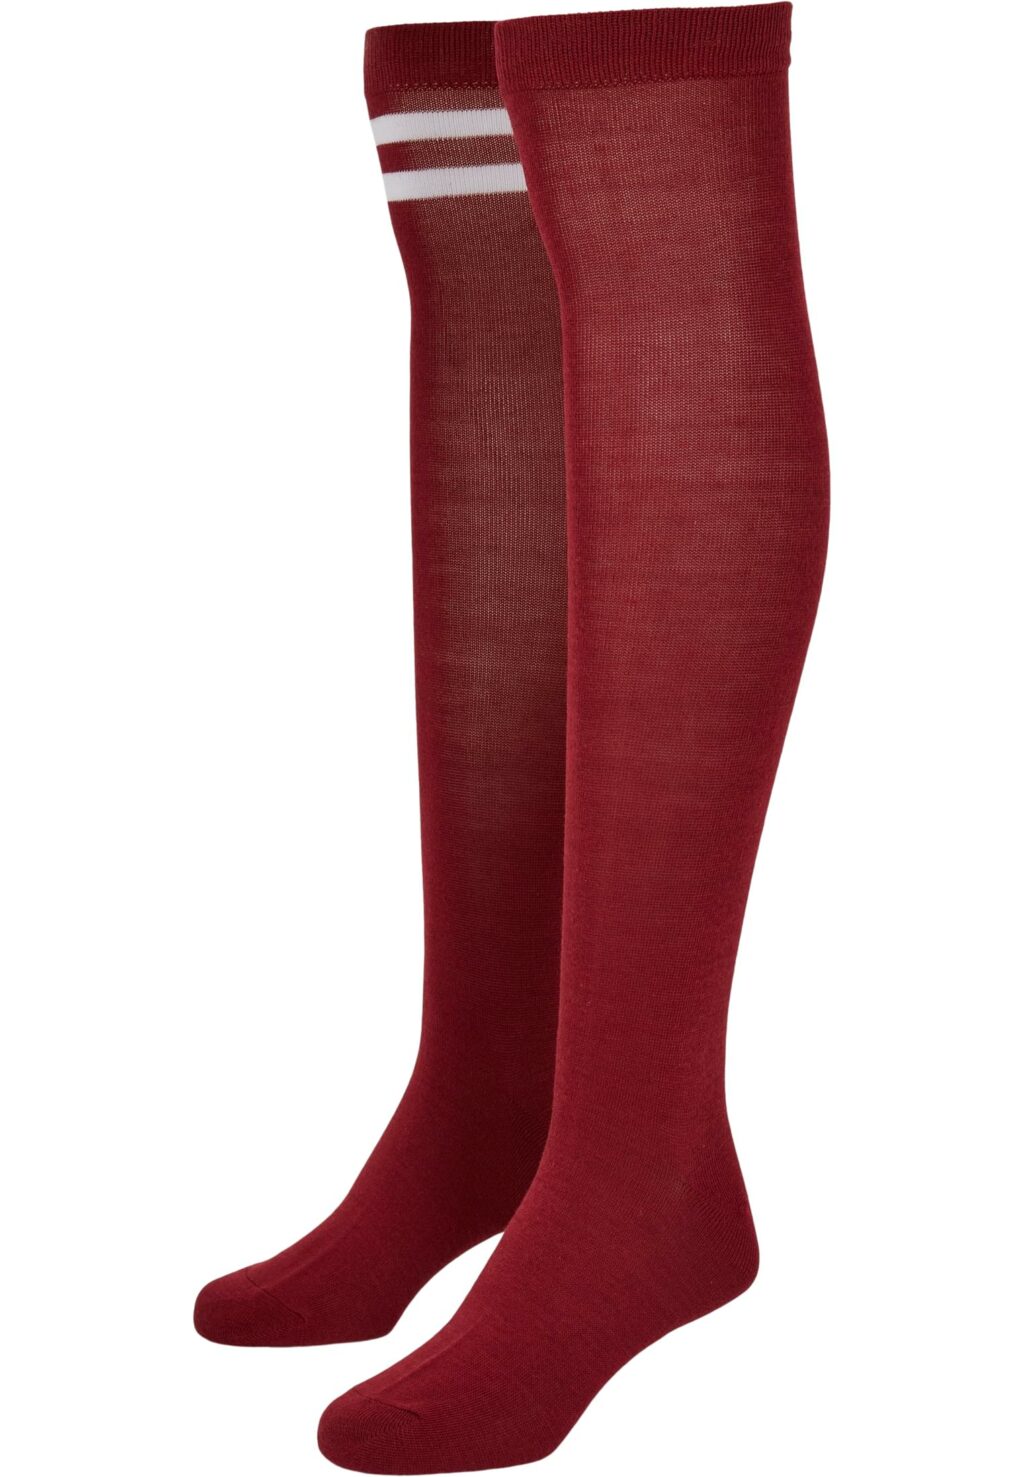 Ladies College Socks 2-Pack burgundy TB4641